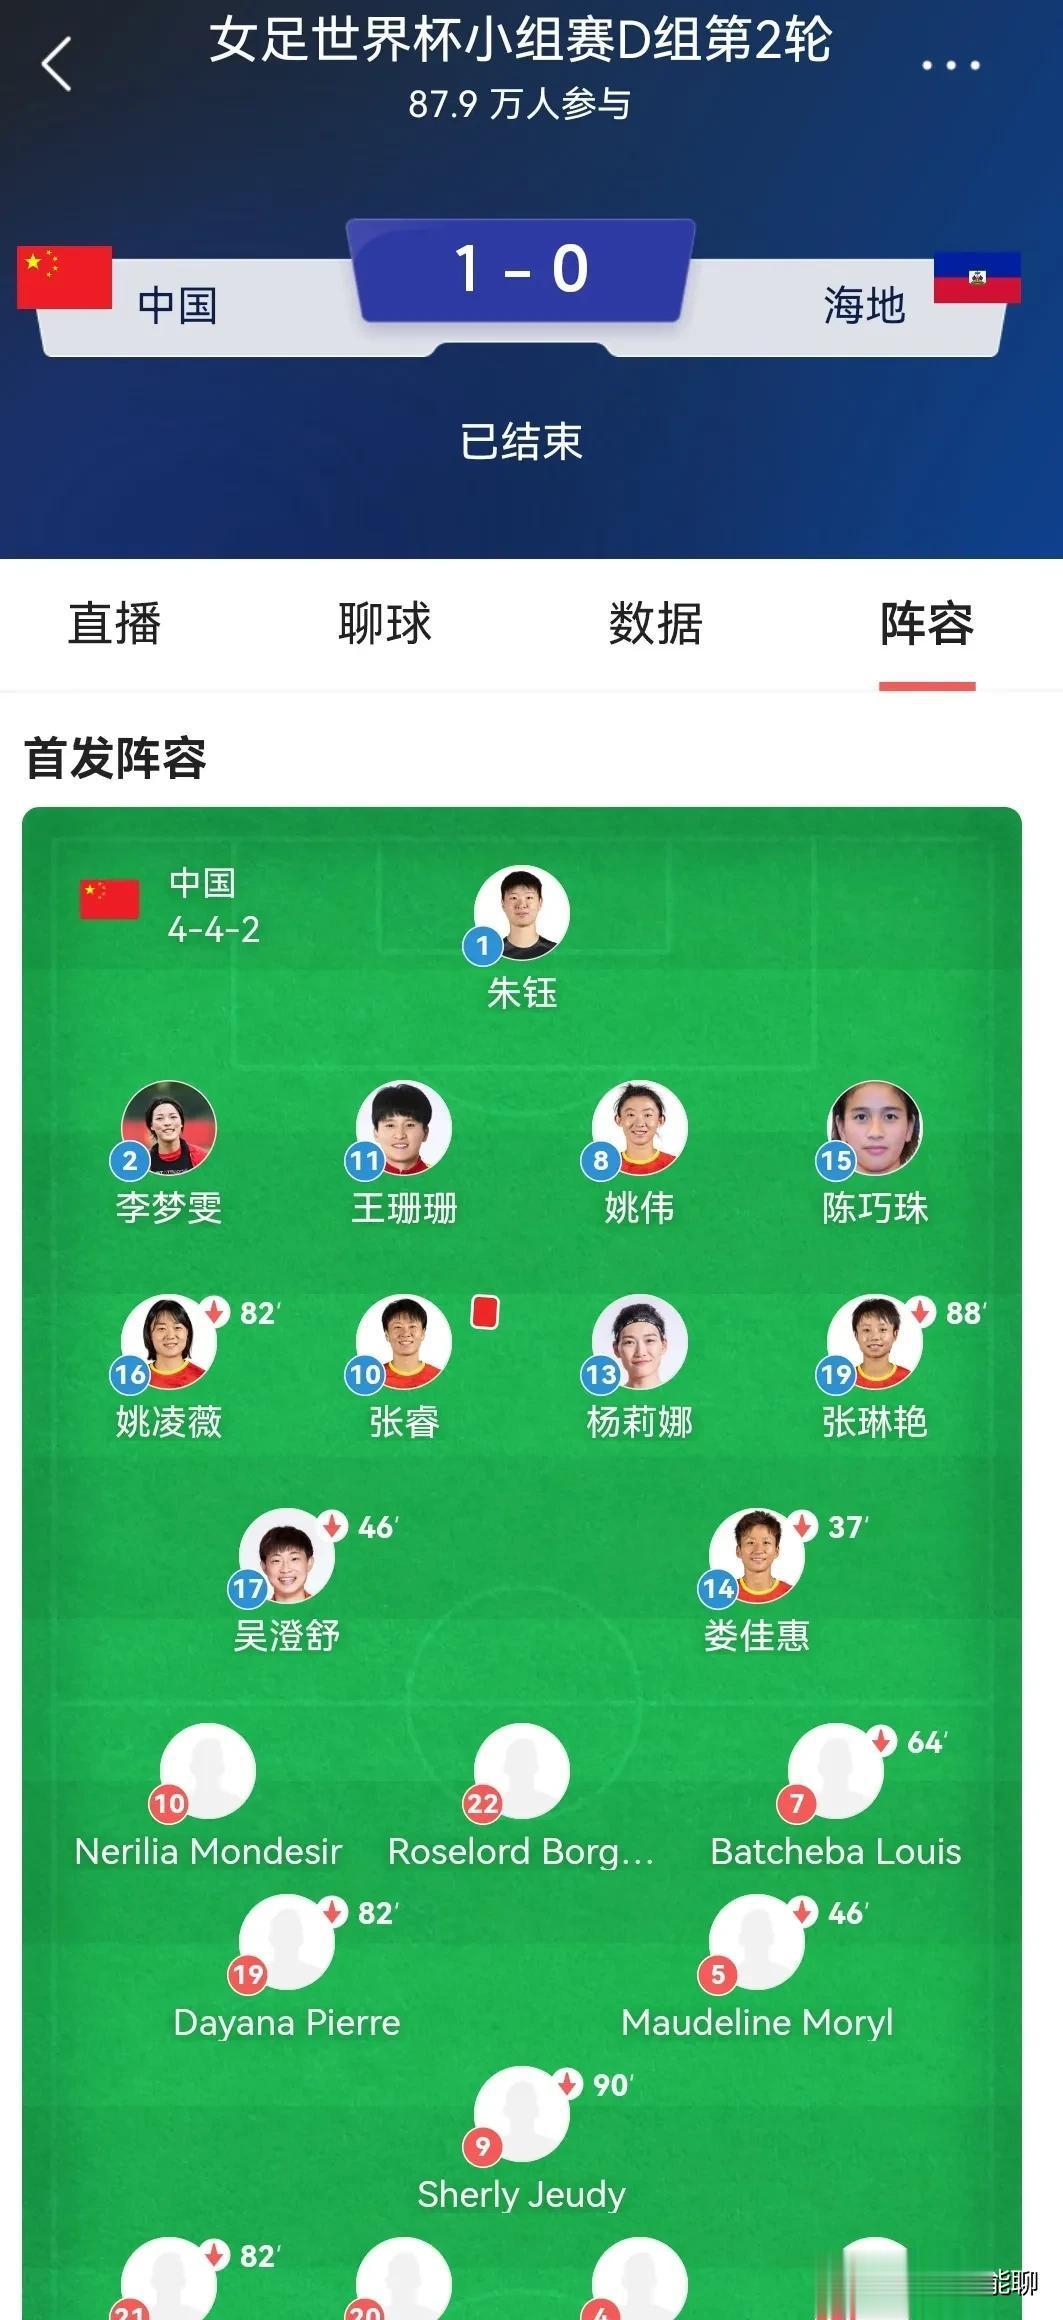 专业网站赛后对于中国女足的评分还是与普通球迷不同。多数人认为本场女足表现最佳的是(3)